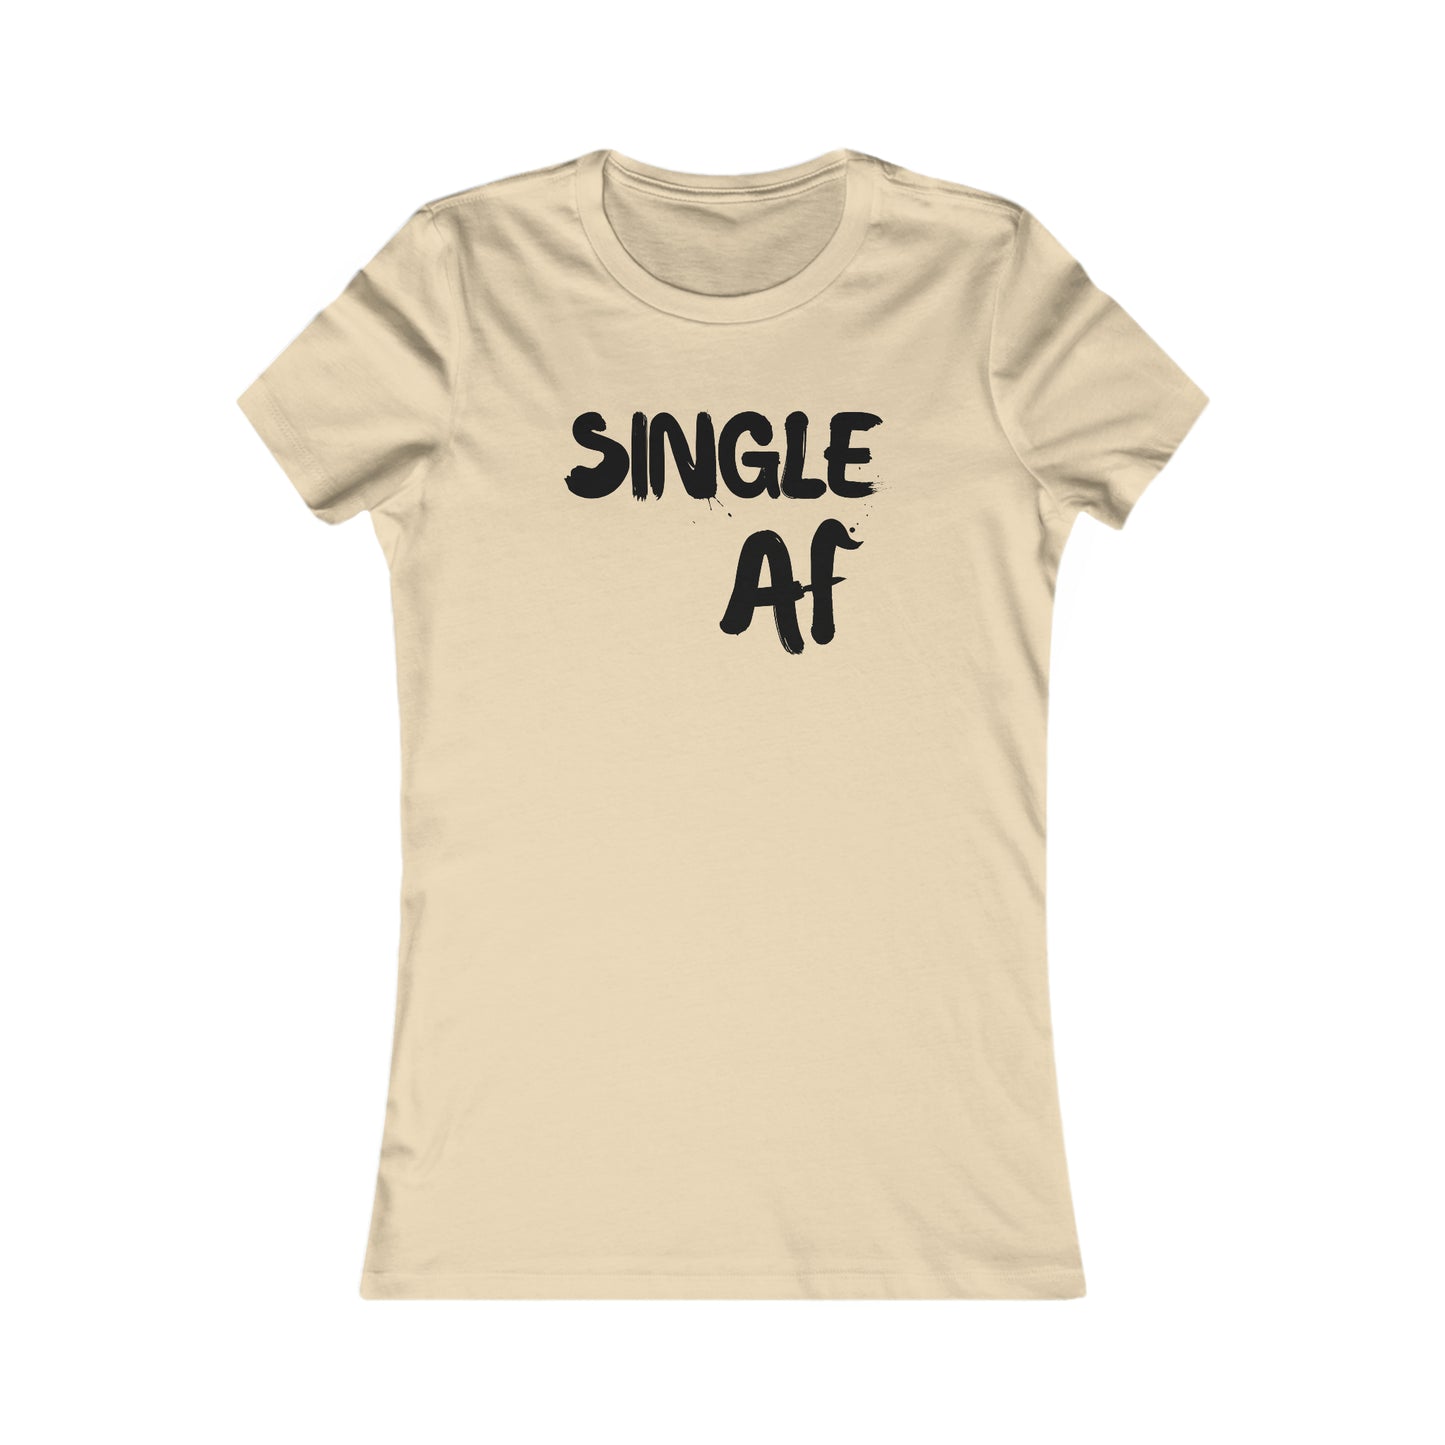 Single AF - Women's Favorite Tee